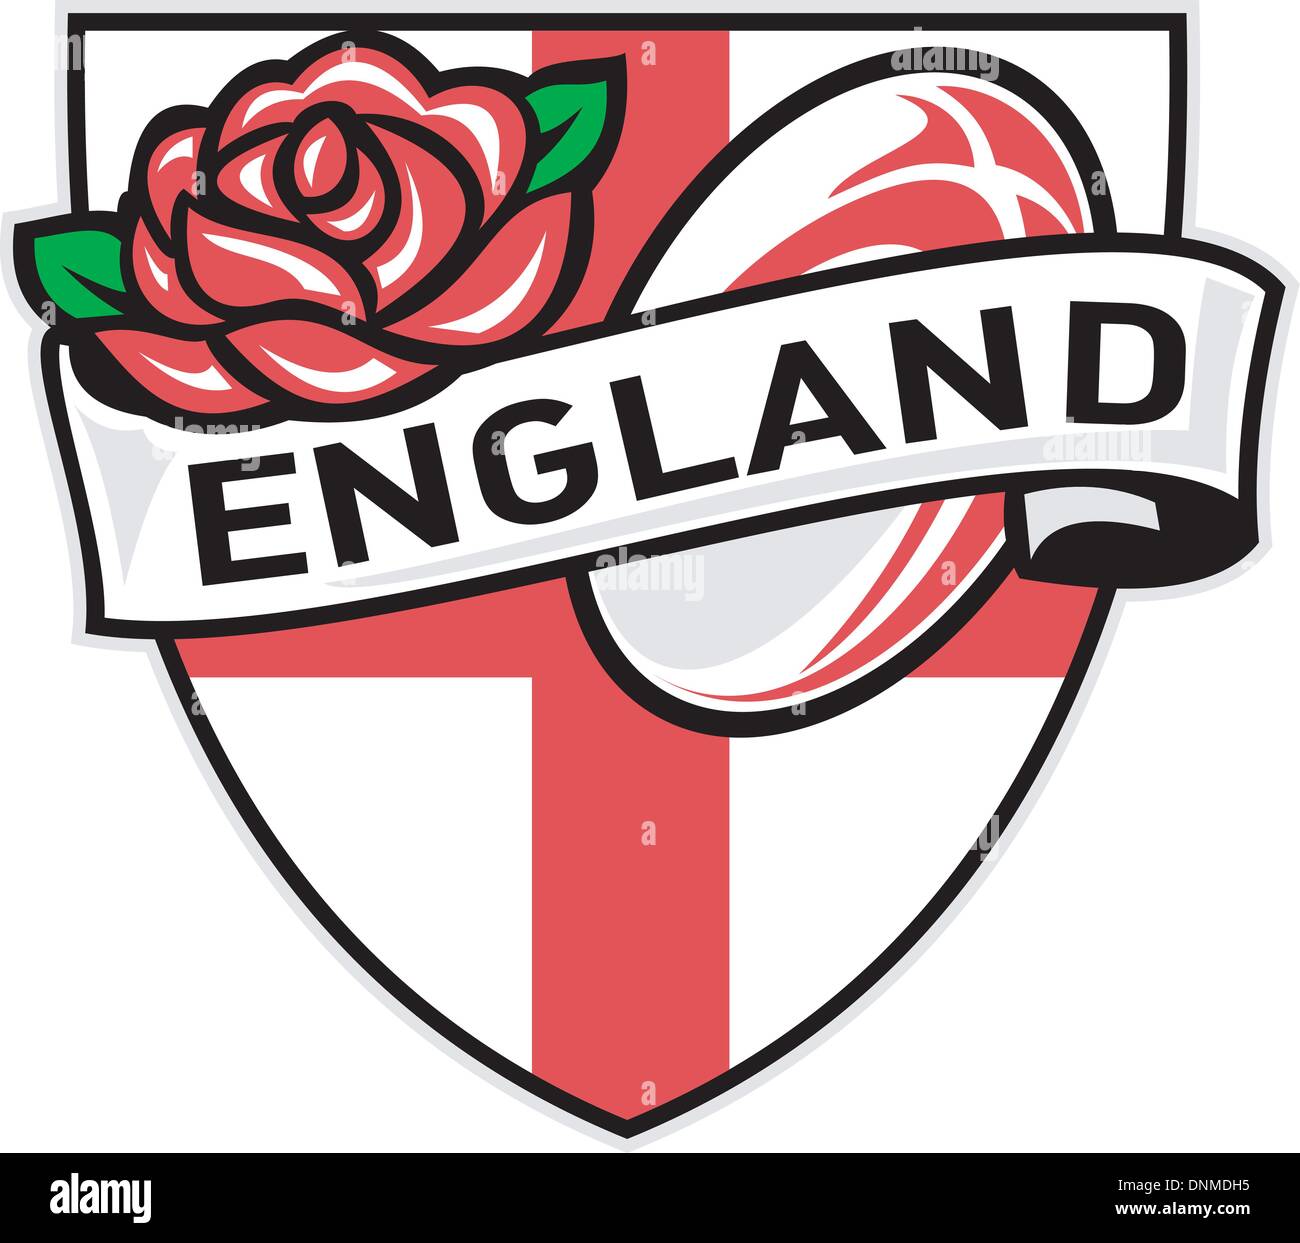 Abbildung einer roten englischen Rose innen Flagge Schild mit Rugby-Ball fliegen aus und Worte "England" Stock Vektor